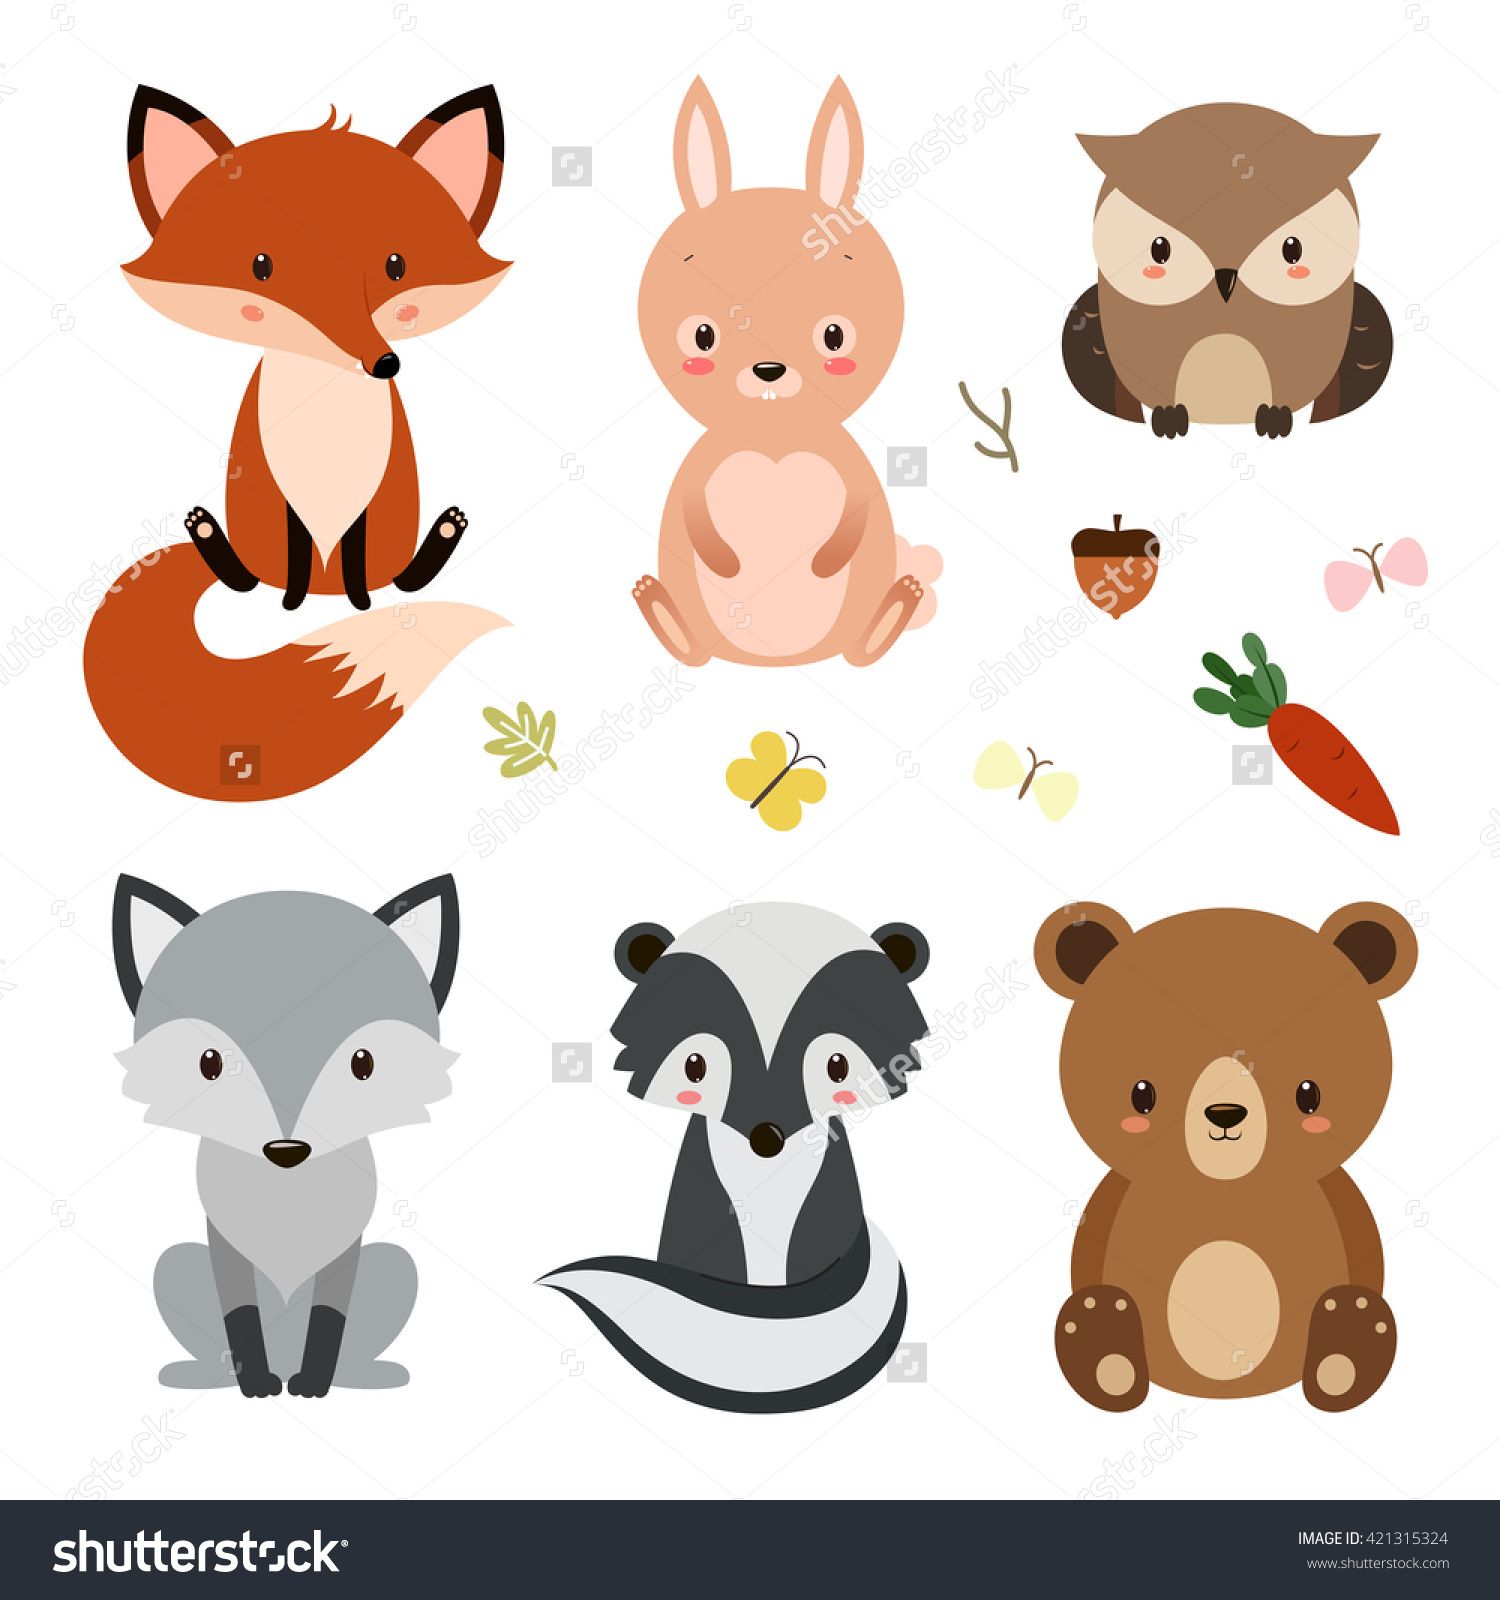 Set of cute woodland animals isolated on white background.